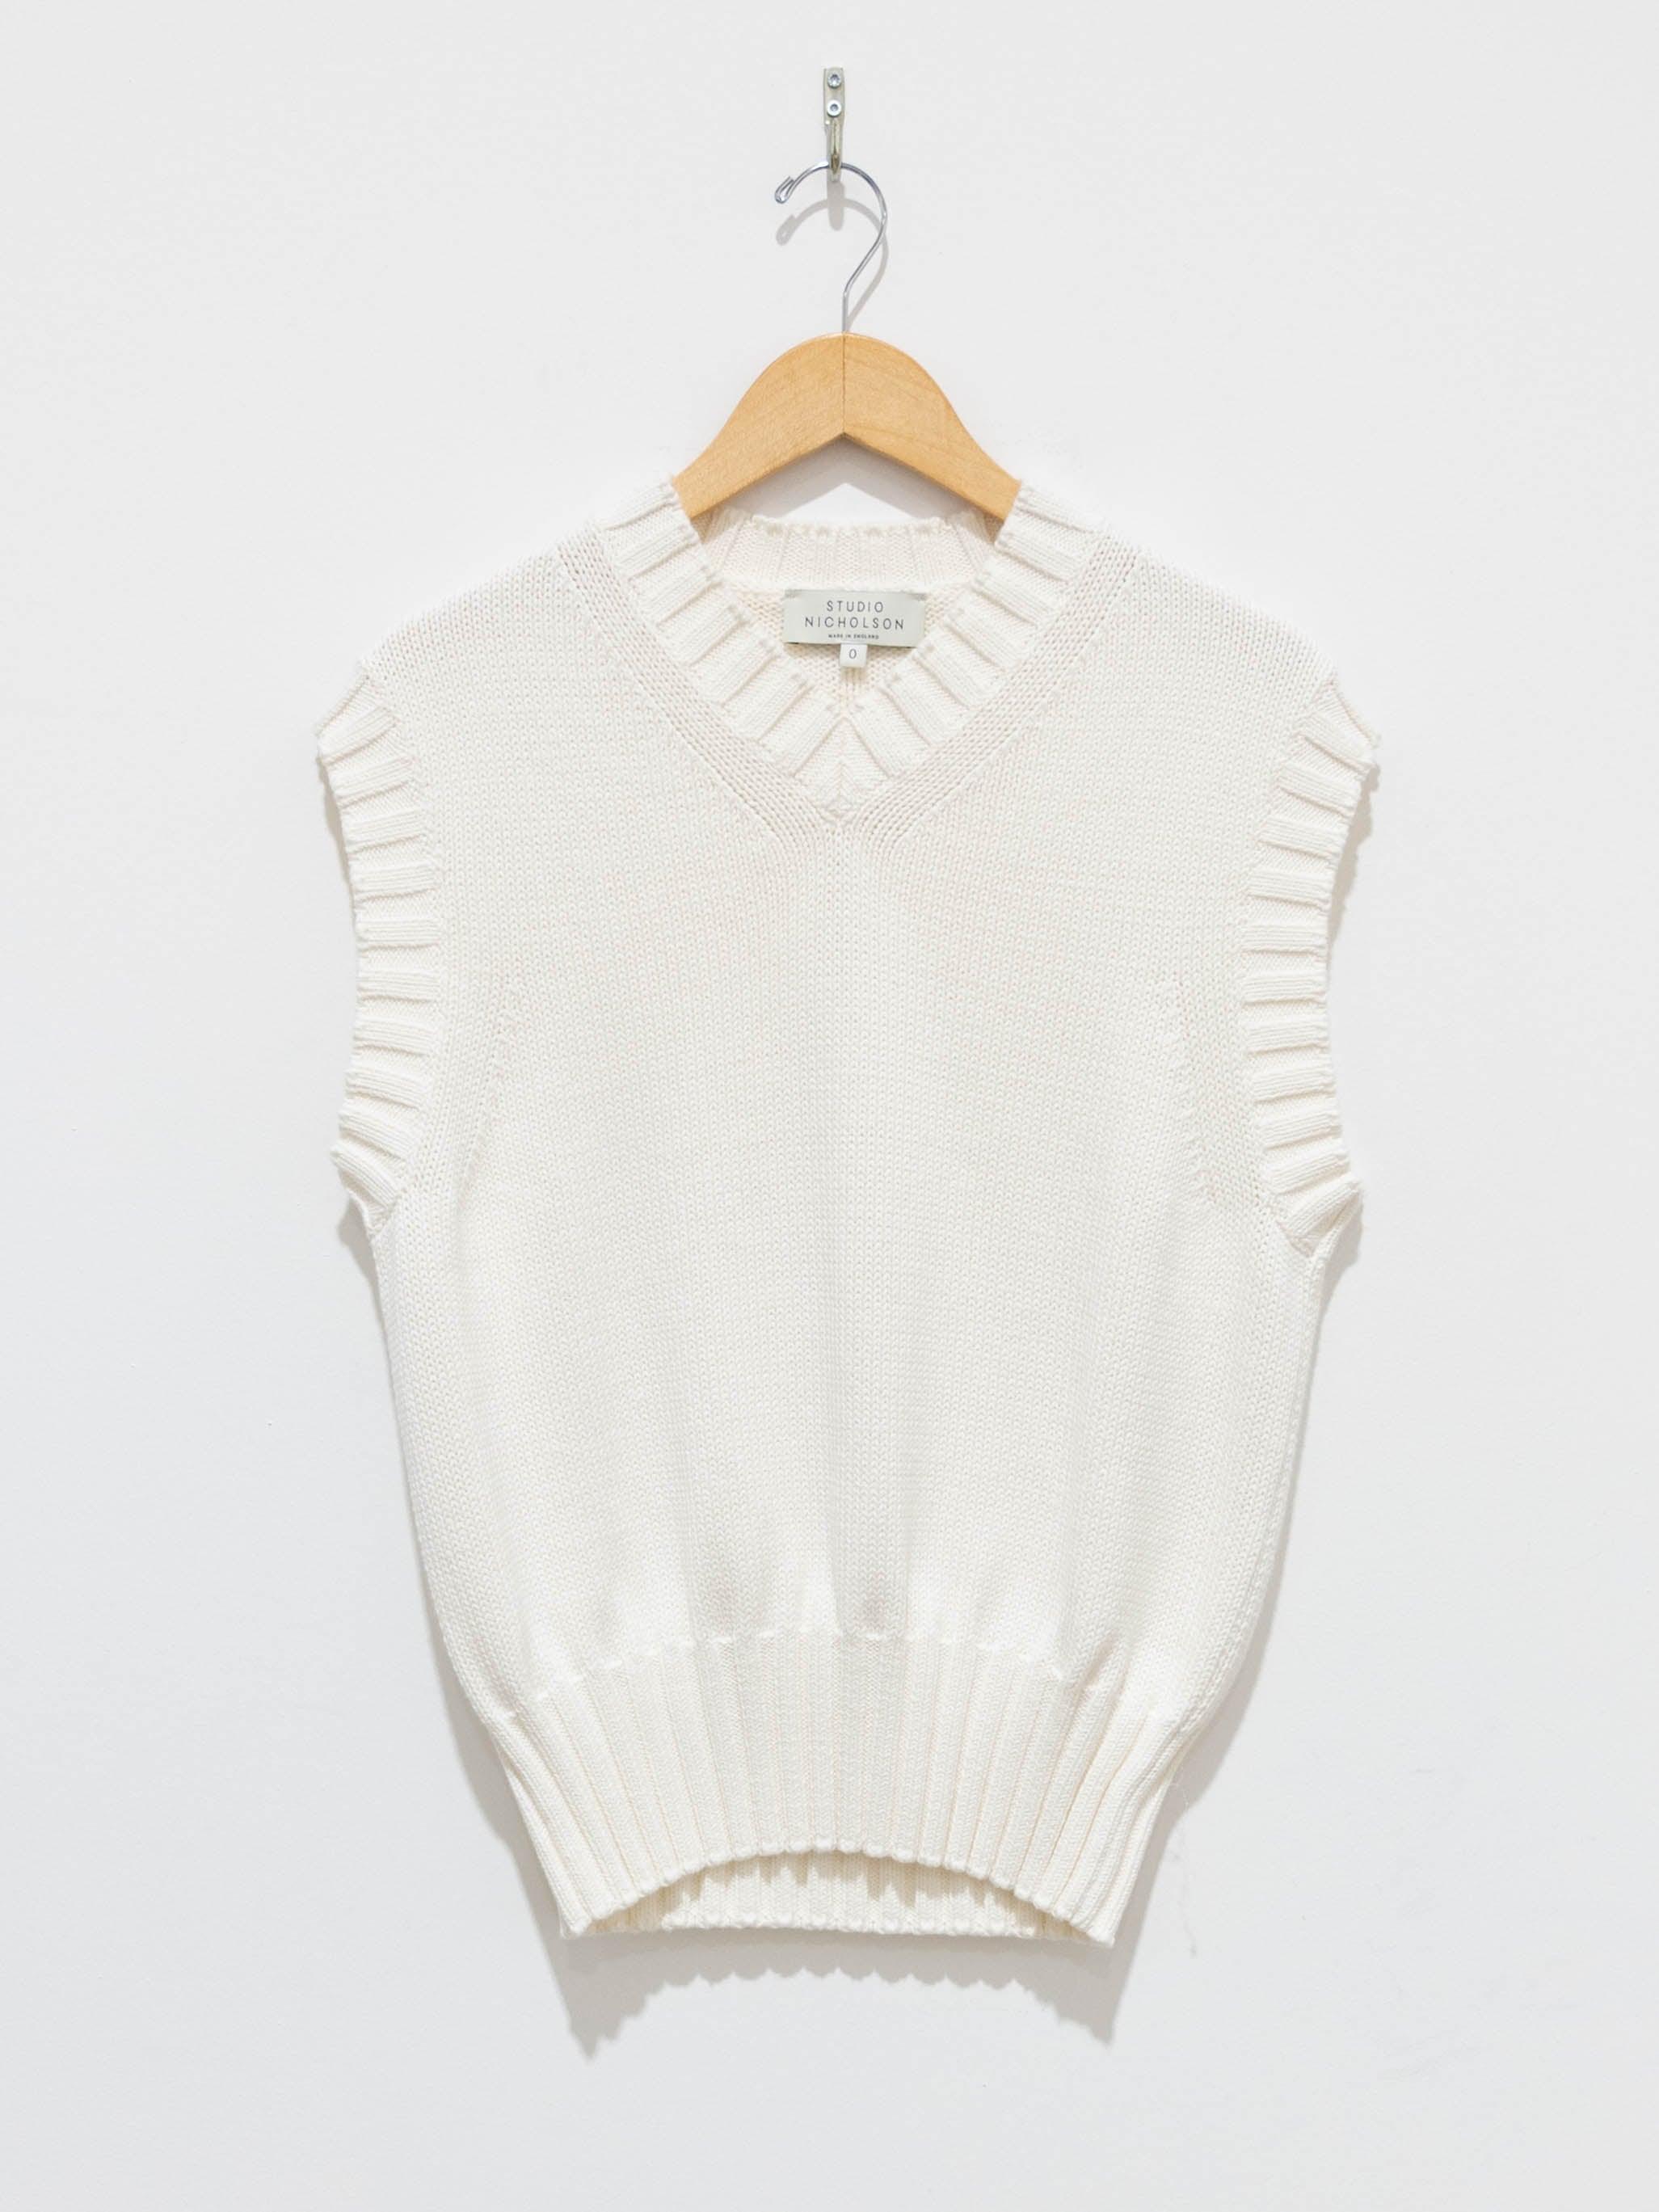 Namu Shop - Studio Nicholson Marit Knit Vest - Cream